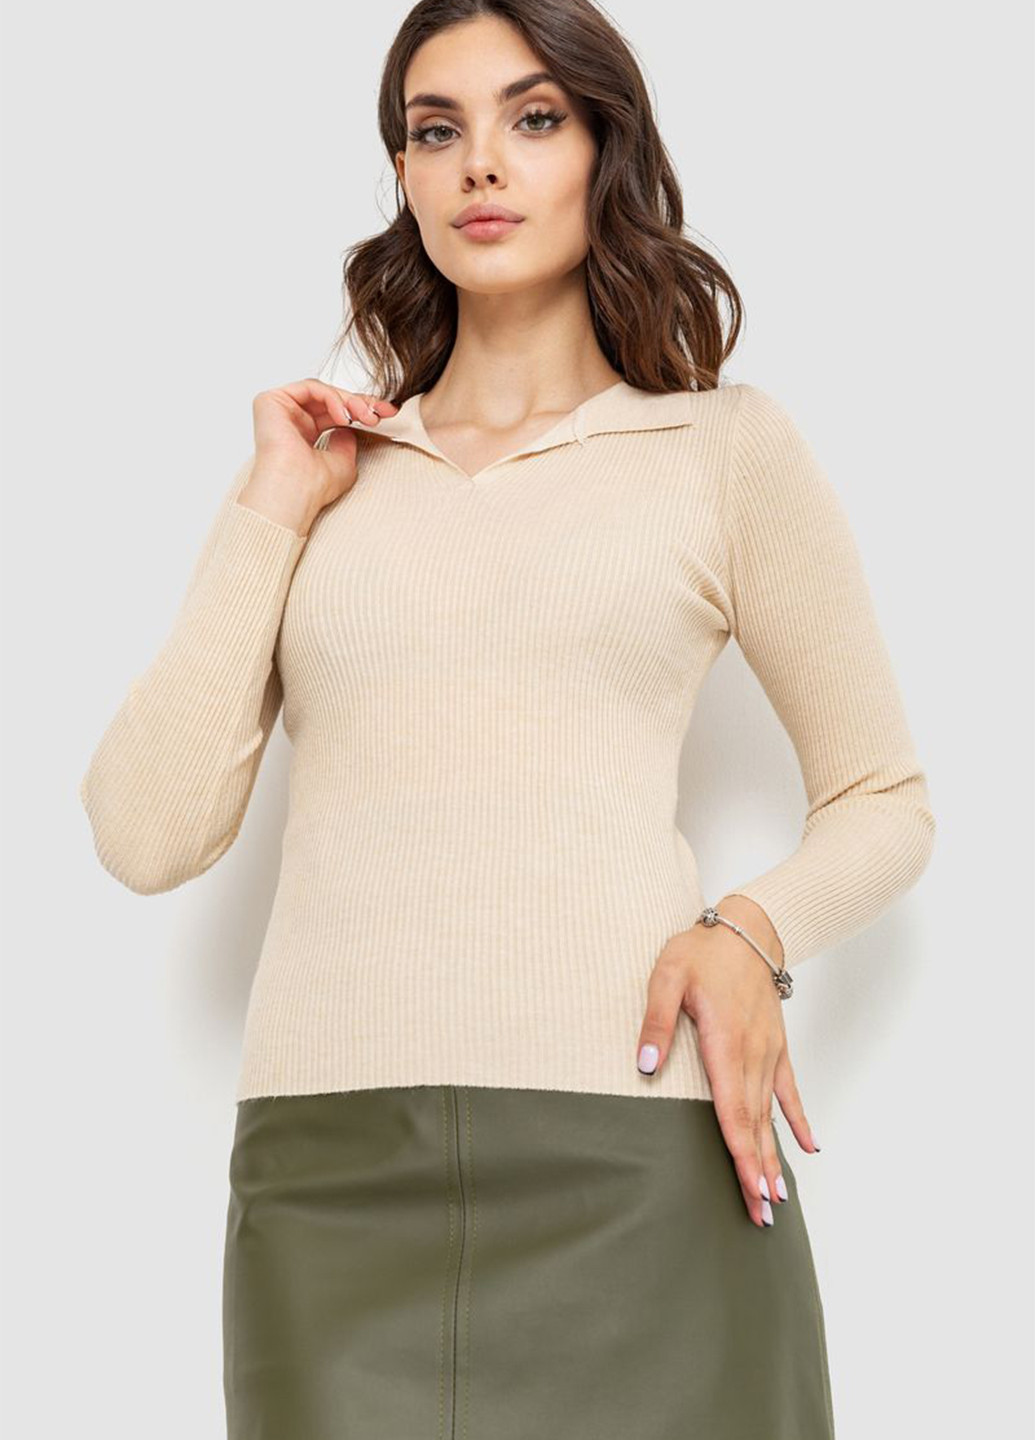 Светло-бежевый демисезонный пуловер пуловер Ager